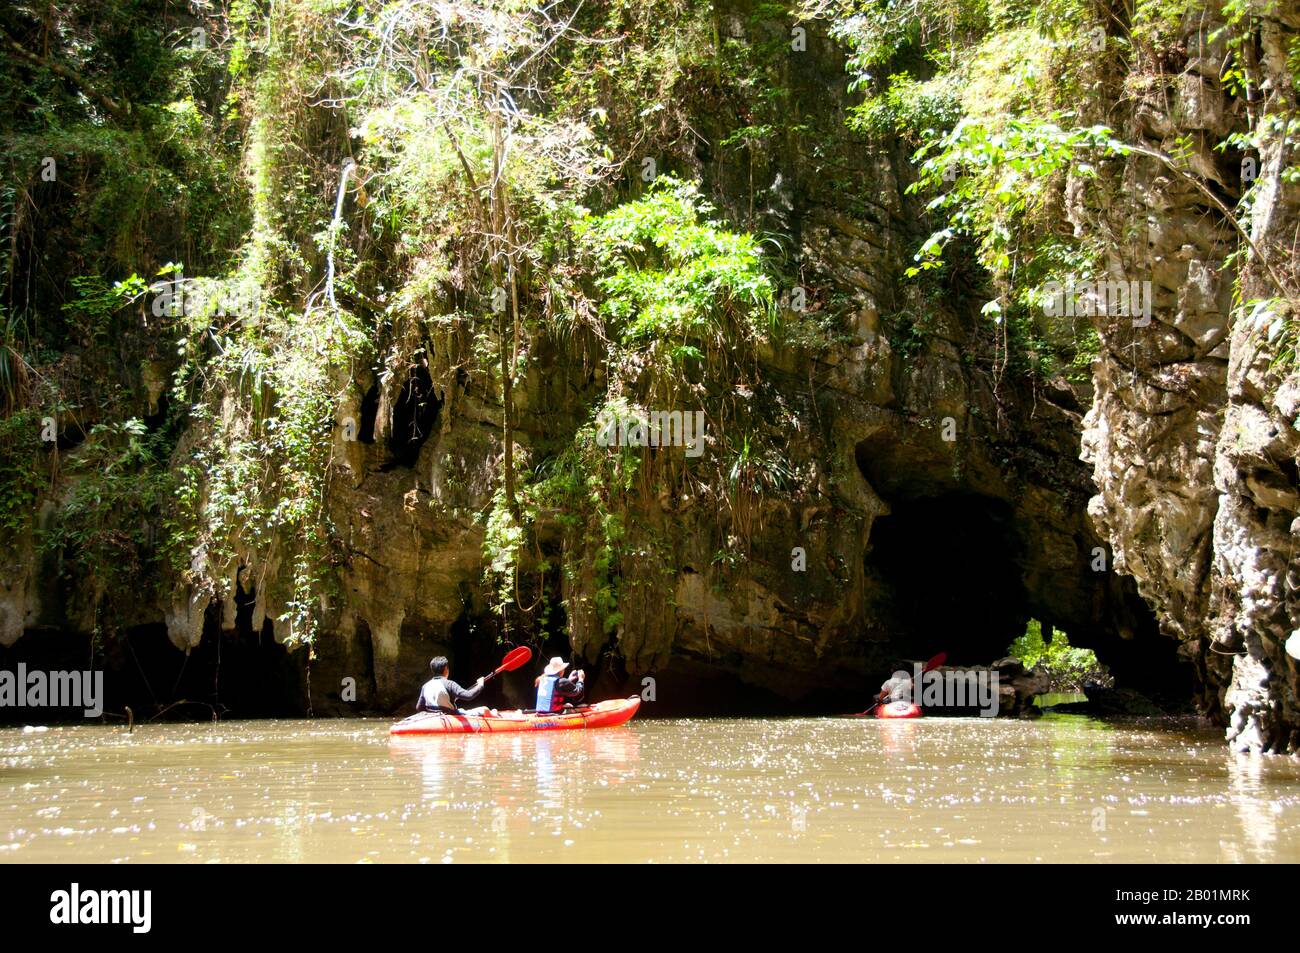 Thailandia: Kayak in una delle lagune chiuse, rispetto al parco nazionale di Bokkharani, provincia di Krabi. Il Parco Nazionale di Than Bokkharani si trova nella provincia di Krabi a circa 45 chilometri (28 miglia) a nord-ovest della città di Krabi. Il parco copre un'area di 121 chilometri quadrati (47 miglia quadrate) ed è caratterizzato da una serie di affioramenti calcarei, foreste pluviali sempreverdi, foreste di mangrovie, torbiere e molte isole. Ci sono anche numerose grotte e complessi rupestri con alcune spettacolari stalagmiti e stalattiti. Il Bokkharani è incentrato su due famose grotte, Tham Lot e Tham Phi Hua. Foto Stock